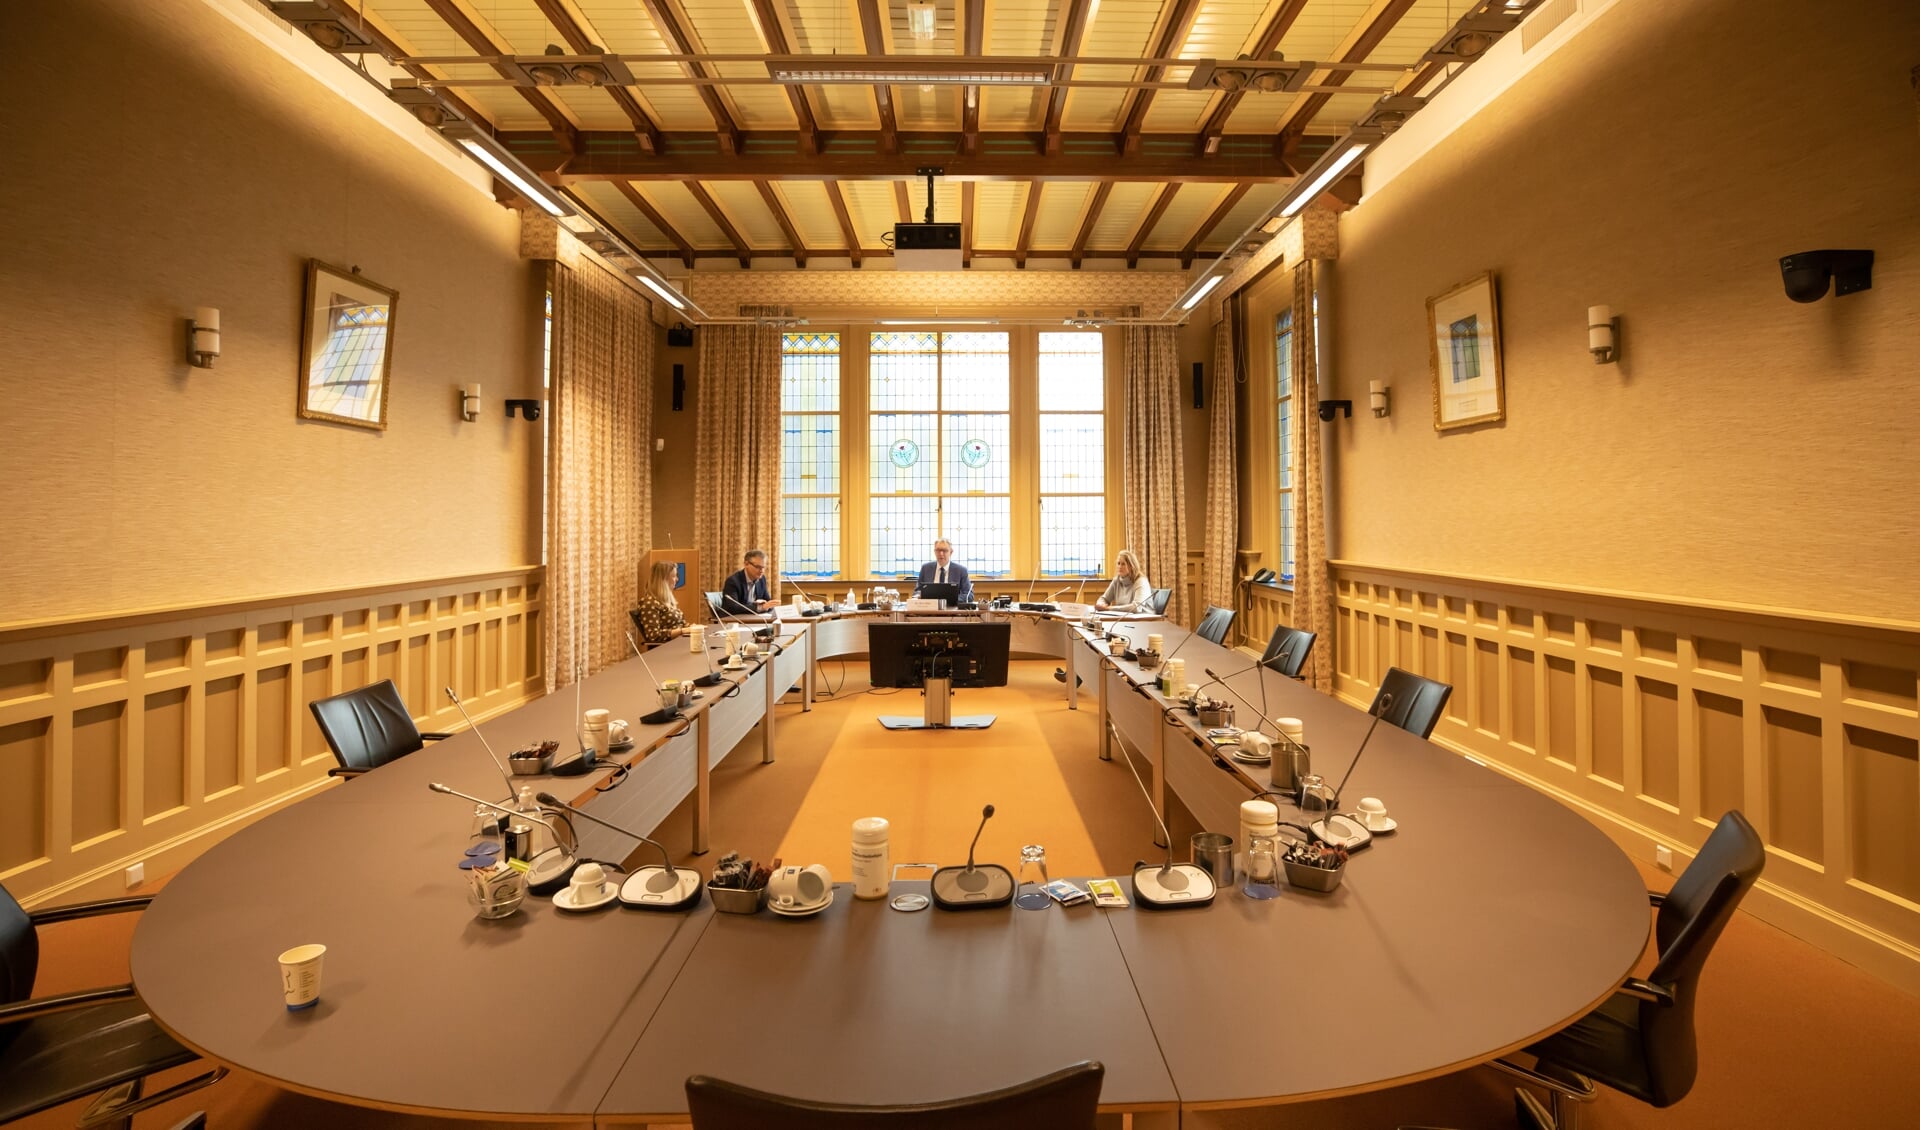 De raadszaal in het gemeentehuis, waar negentien raadsleden maandelijks besluiten nemen, namens de burgers van Baarn. 